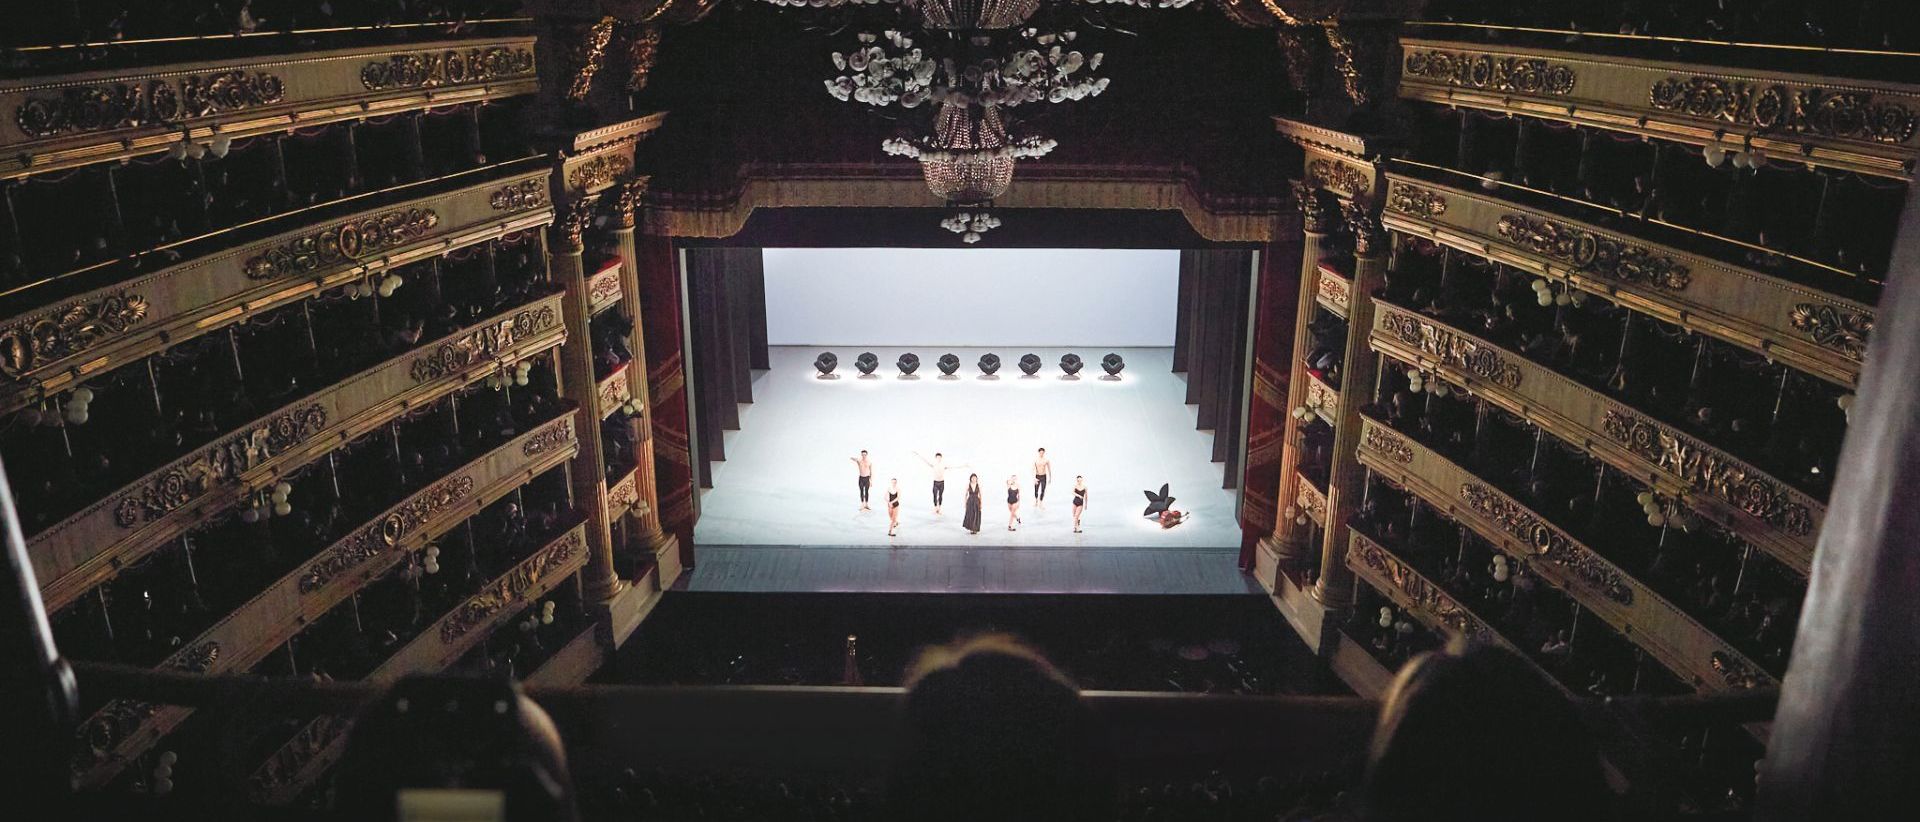  Teatro alla Scala. Ein Bild des Balletts „Largo: Garten mit Vollmond“, geschaffen von Matteo Levaggi mit szenografischen Vorschlägen der Künstlerin Samantha Stella. 